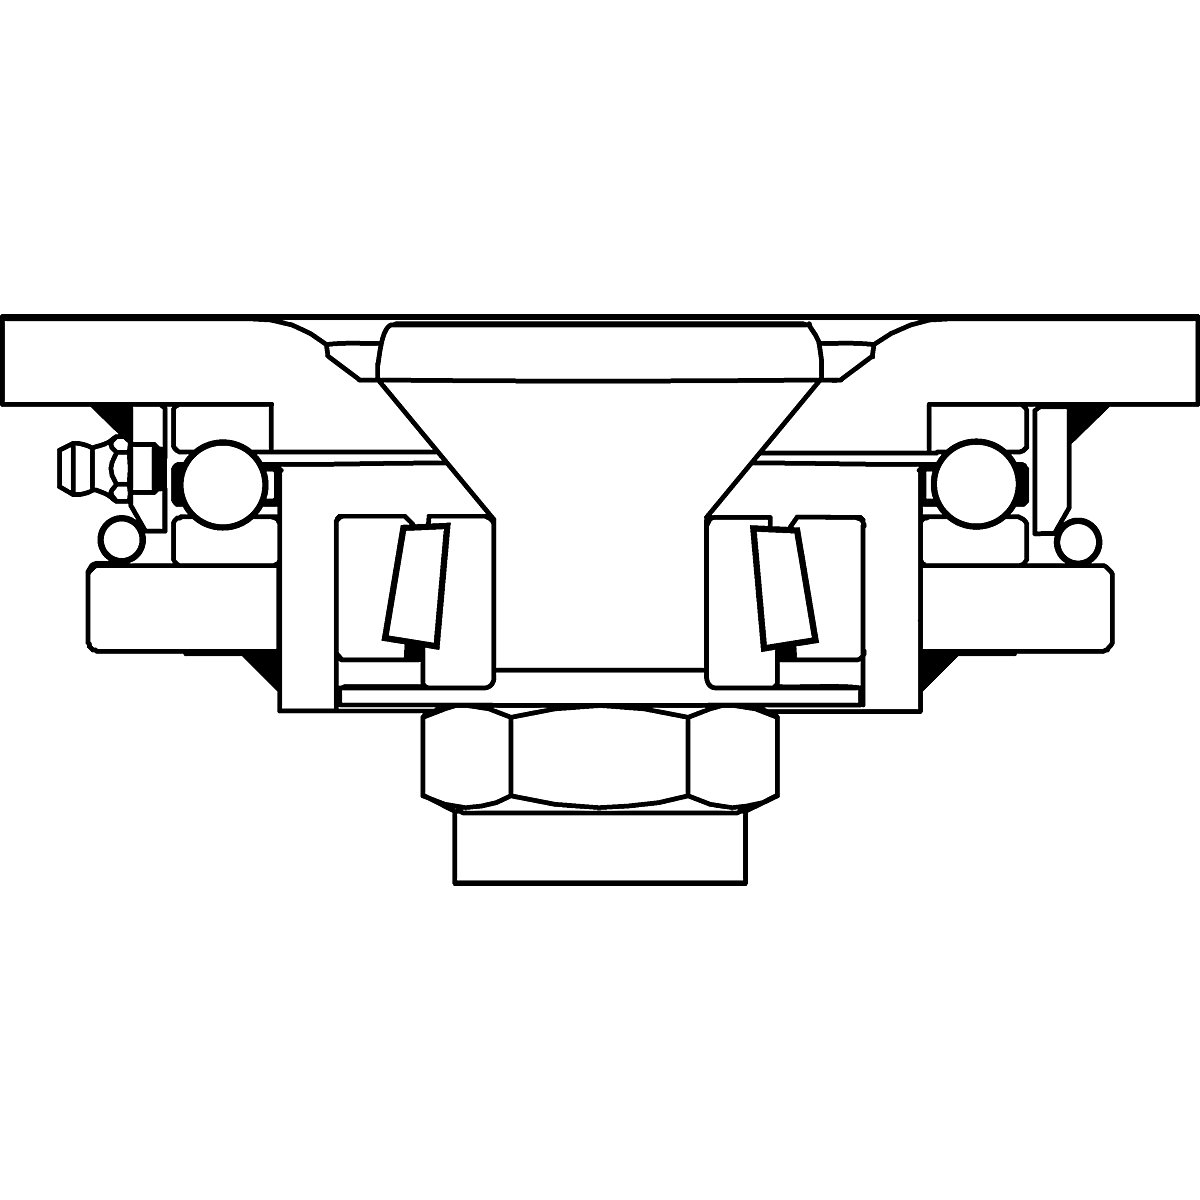 Cubierta de poliuretano, dimensiones de la placa 175 x 140 mm – Proroll (Imagen del producto 9)-8